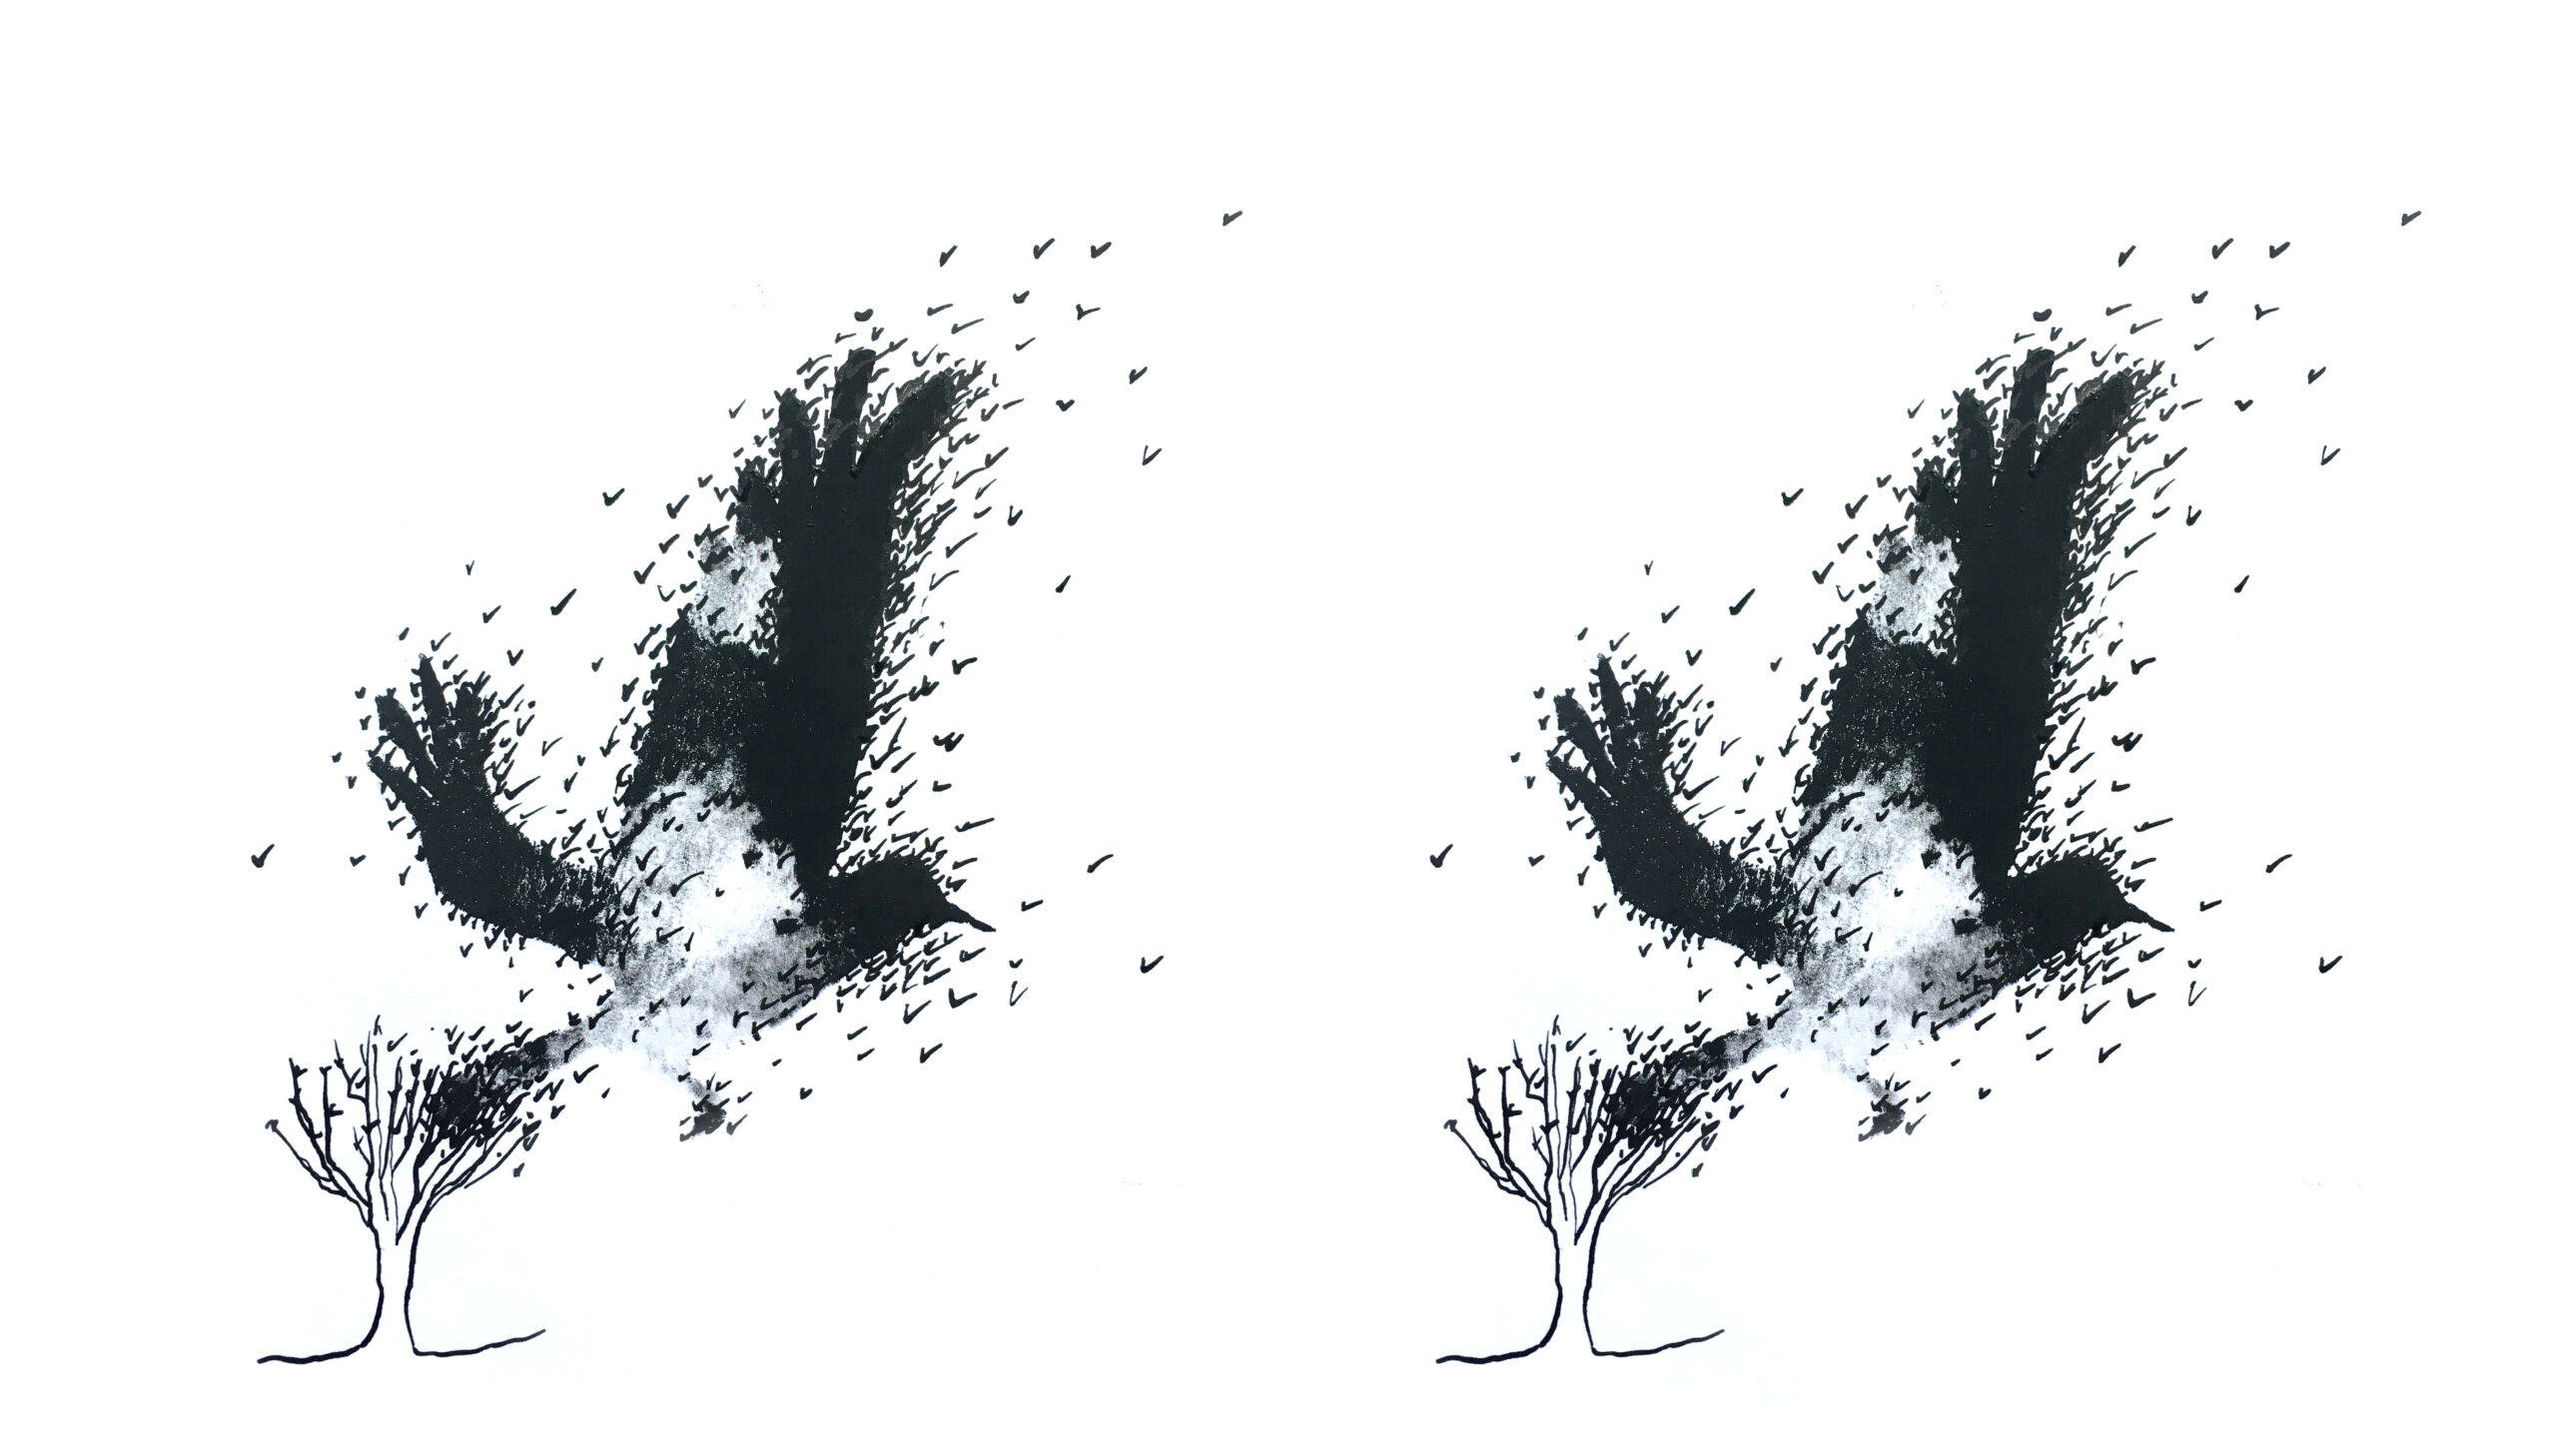 A little wiser: Why do birds swarm?